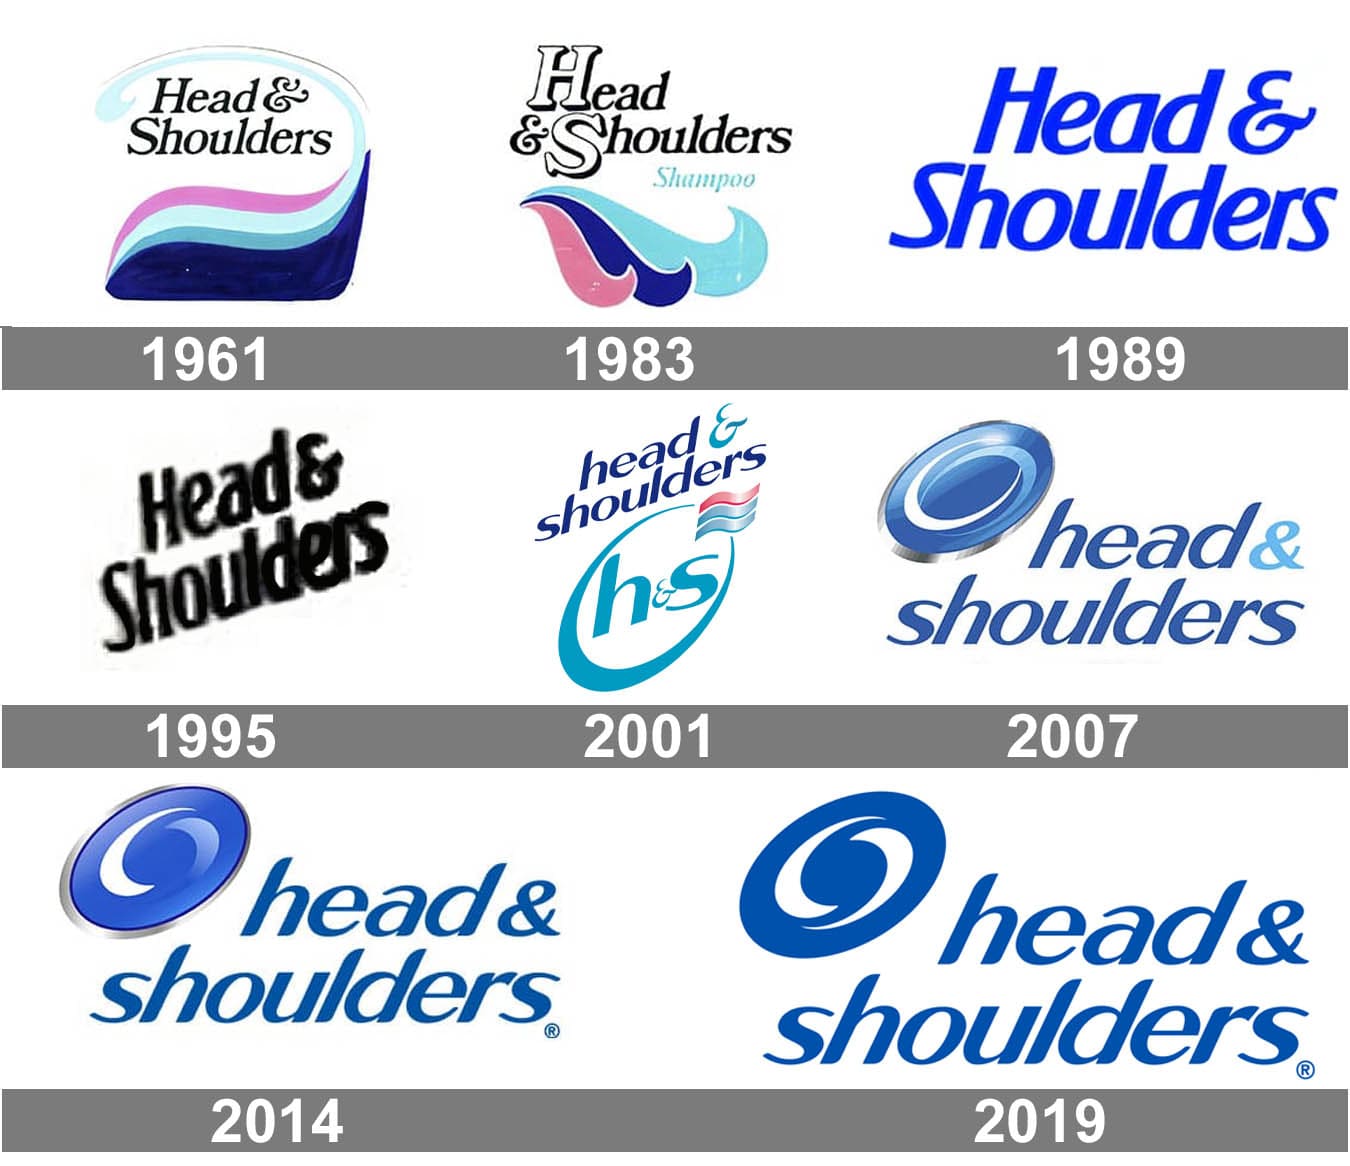 Mẫu thiết kế logo thương hiệu công ty HEAD & SHOULDERS 2